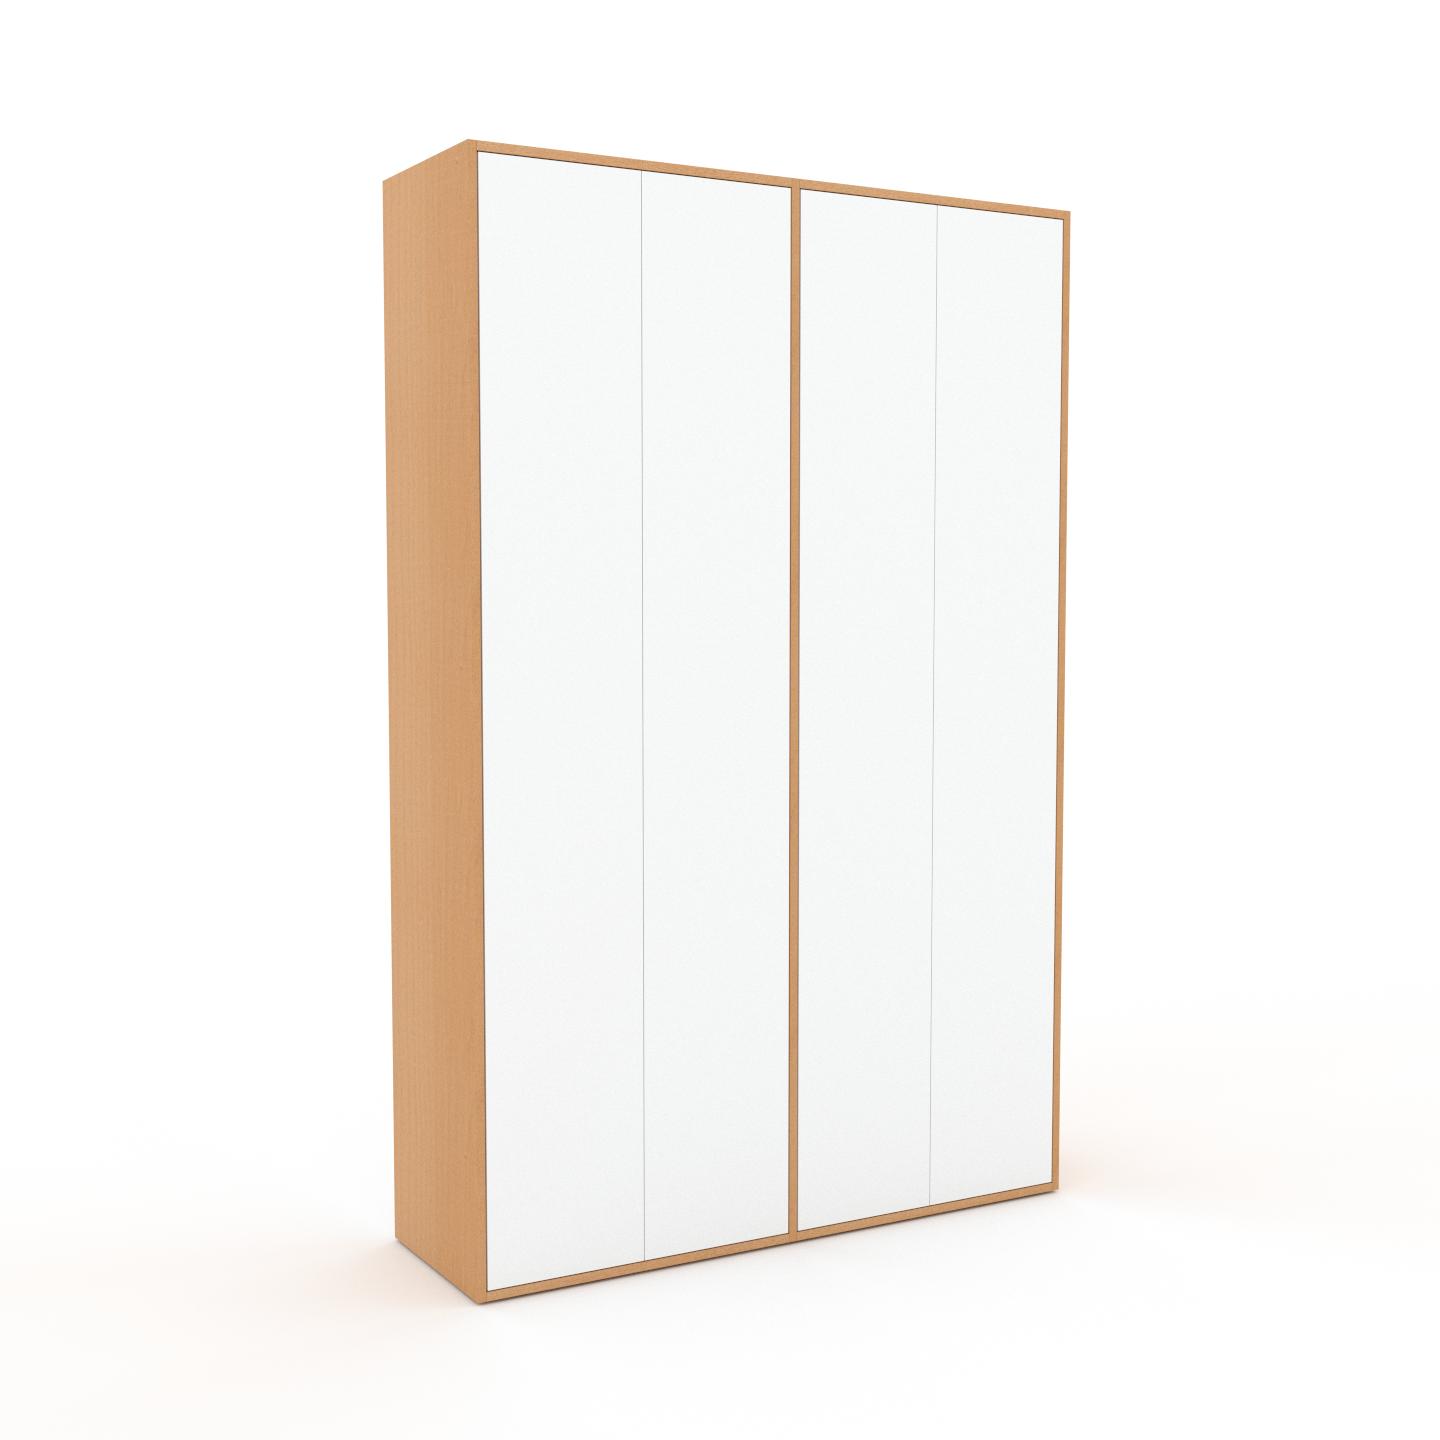 MYCS Schrank Weiß - Moderner Schrank: Türen in Weiß - Hochwertige Materialien - 152 x 233 x 47 cm, Selbst zusammenstellen